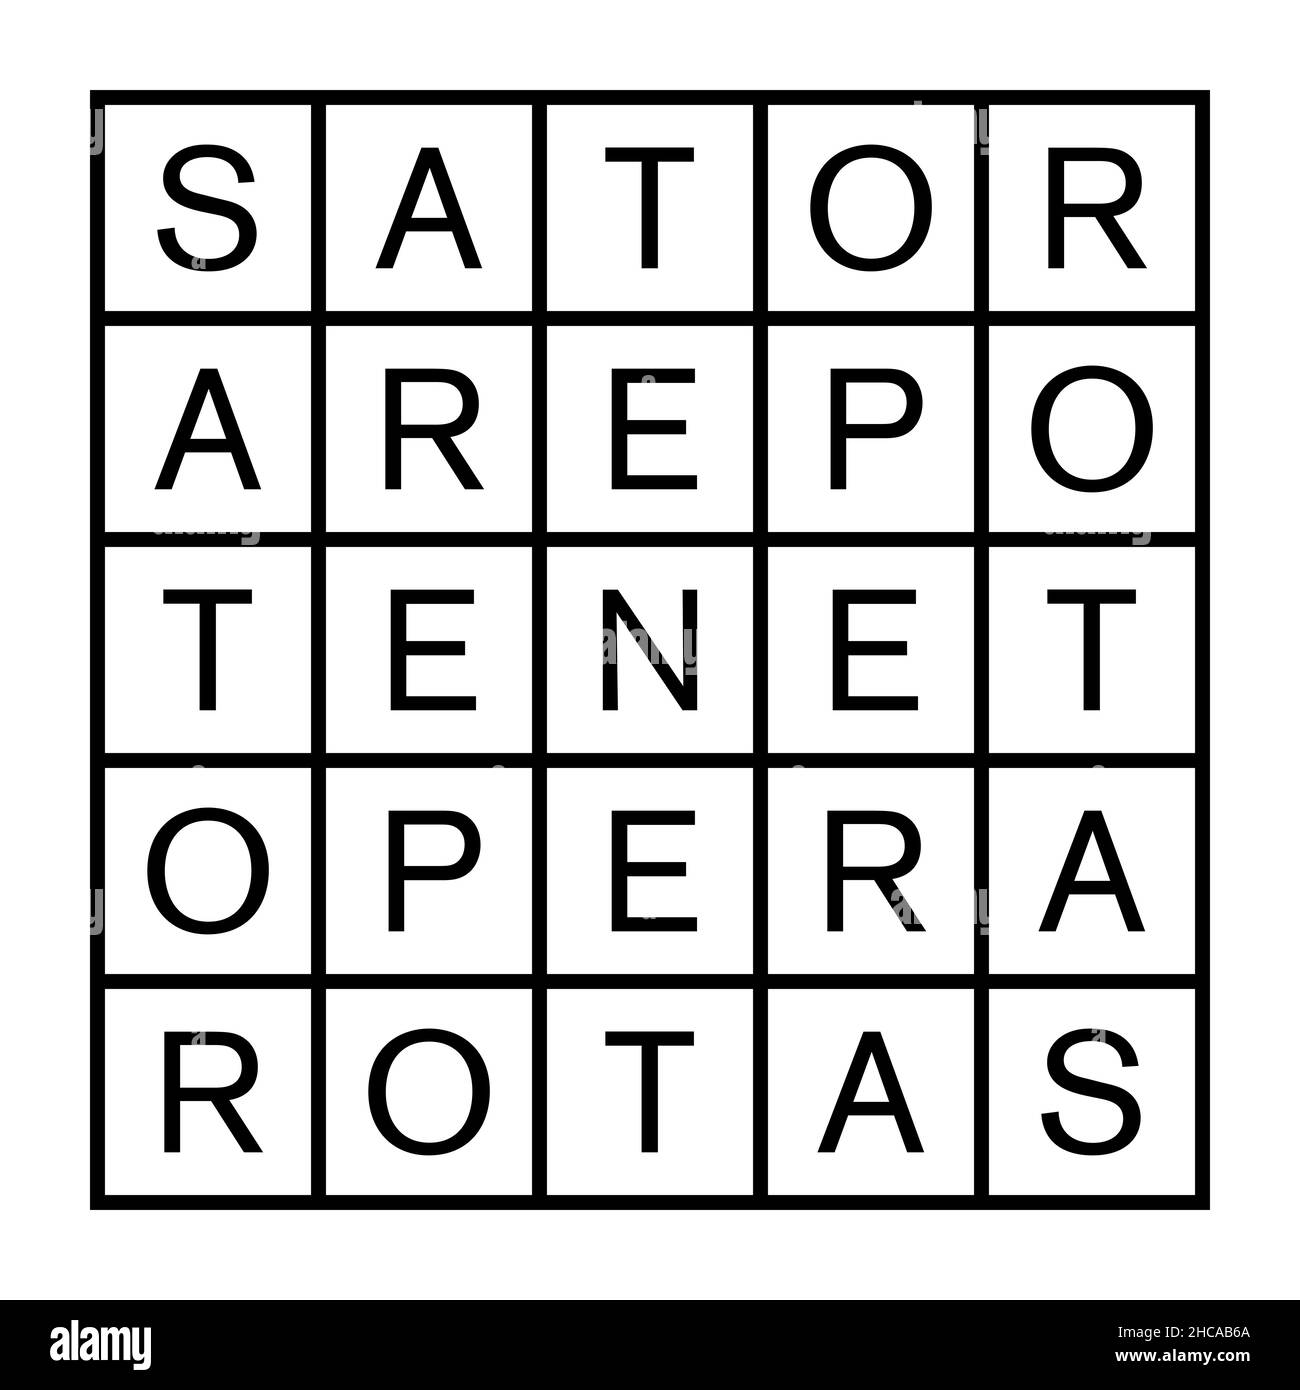 Sator Square oder Rotas Square. Zweidimensionales Wortquadrat mit dem fünfwortigen lateinischen Palindrom Sator, Arepo, Tenet, Opera und Rotas. Stockfoto